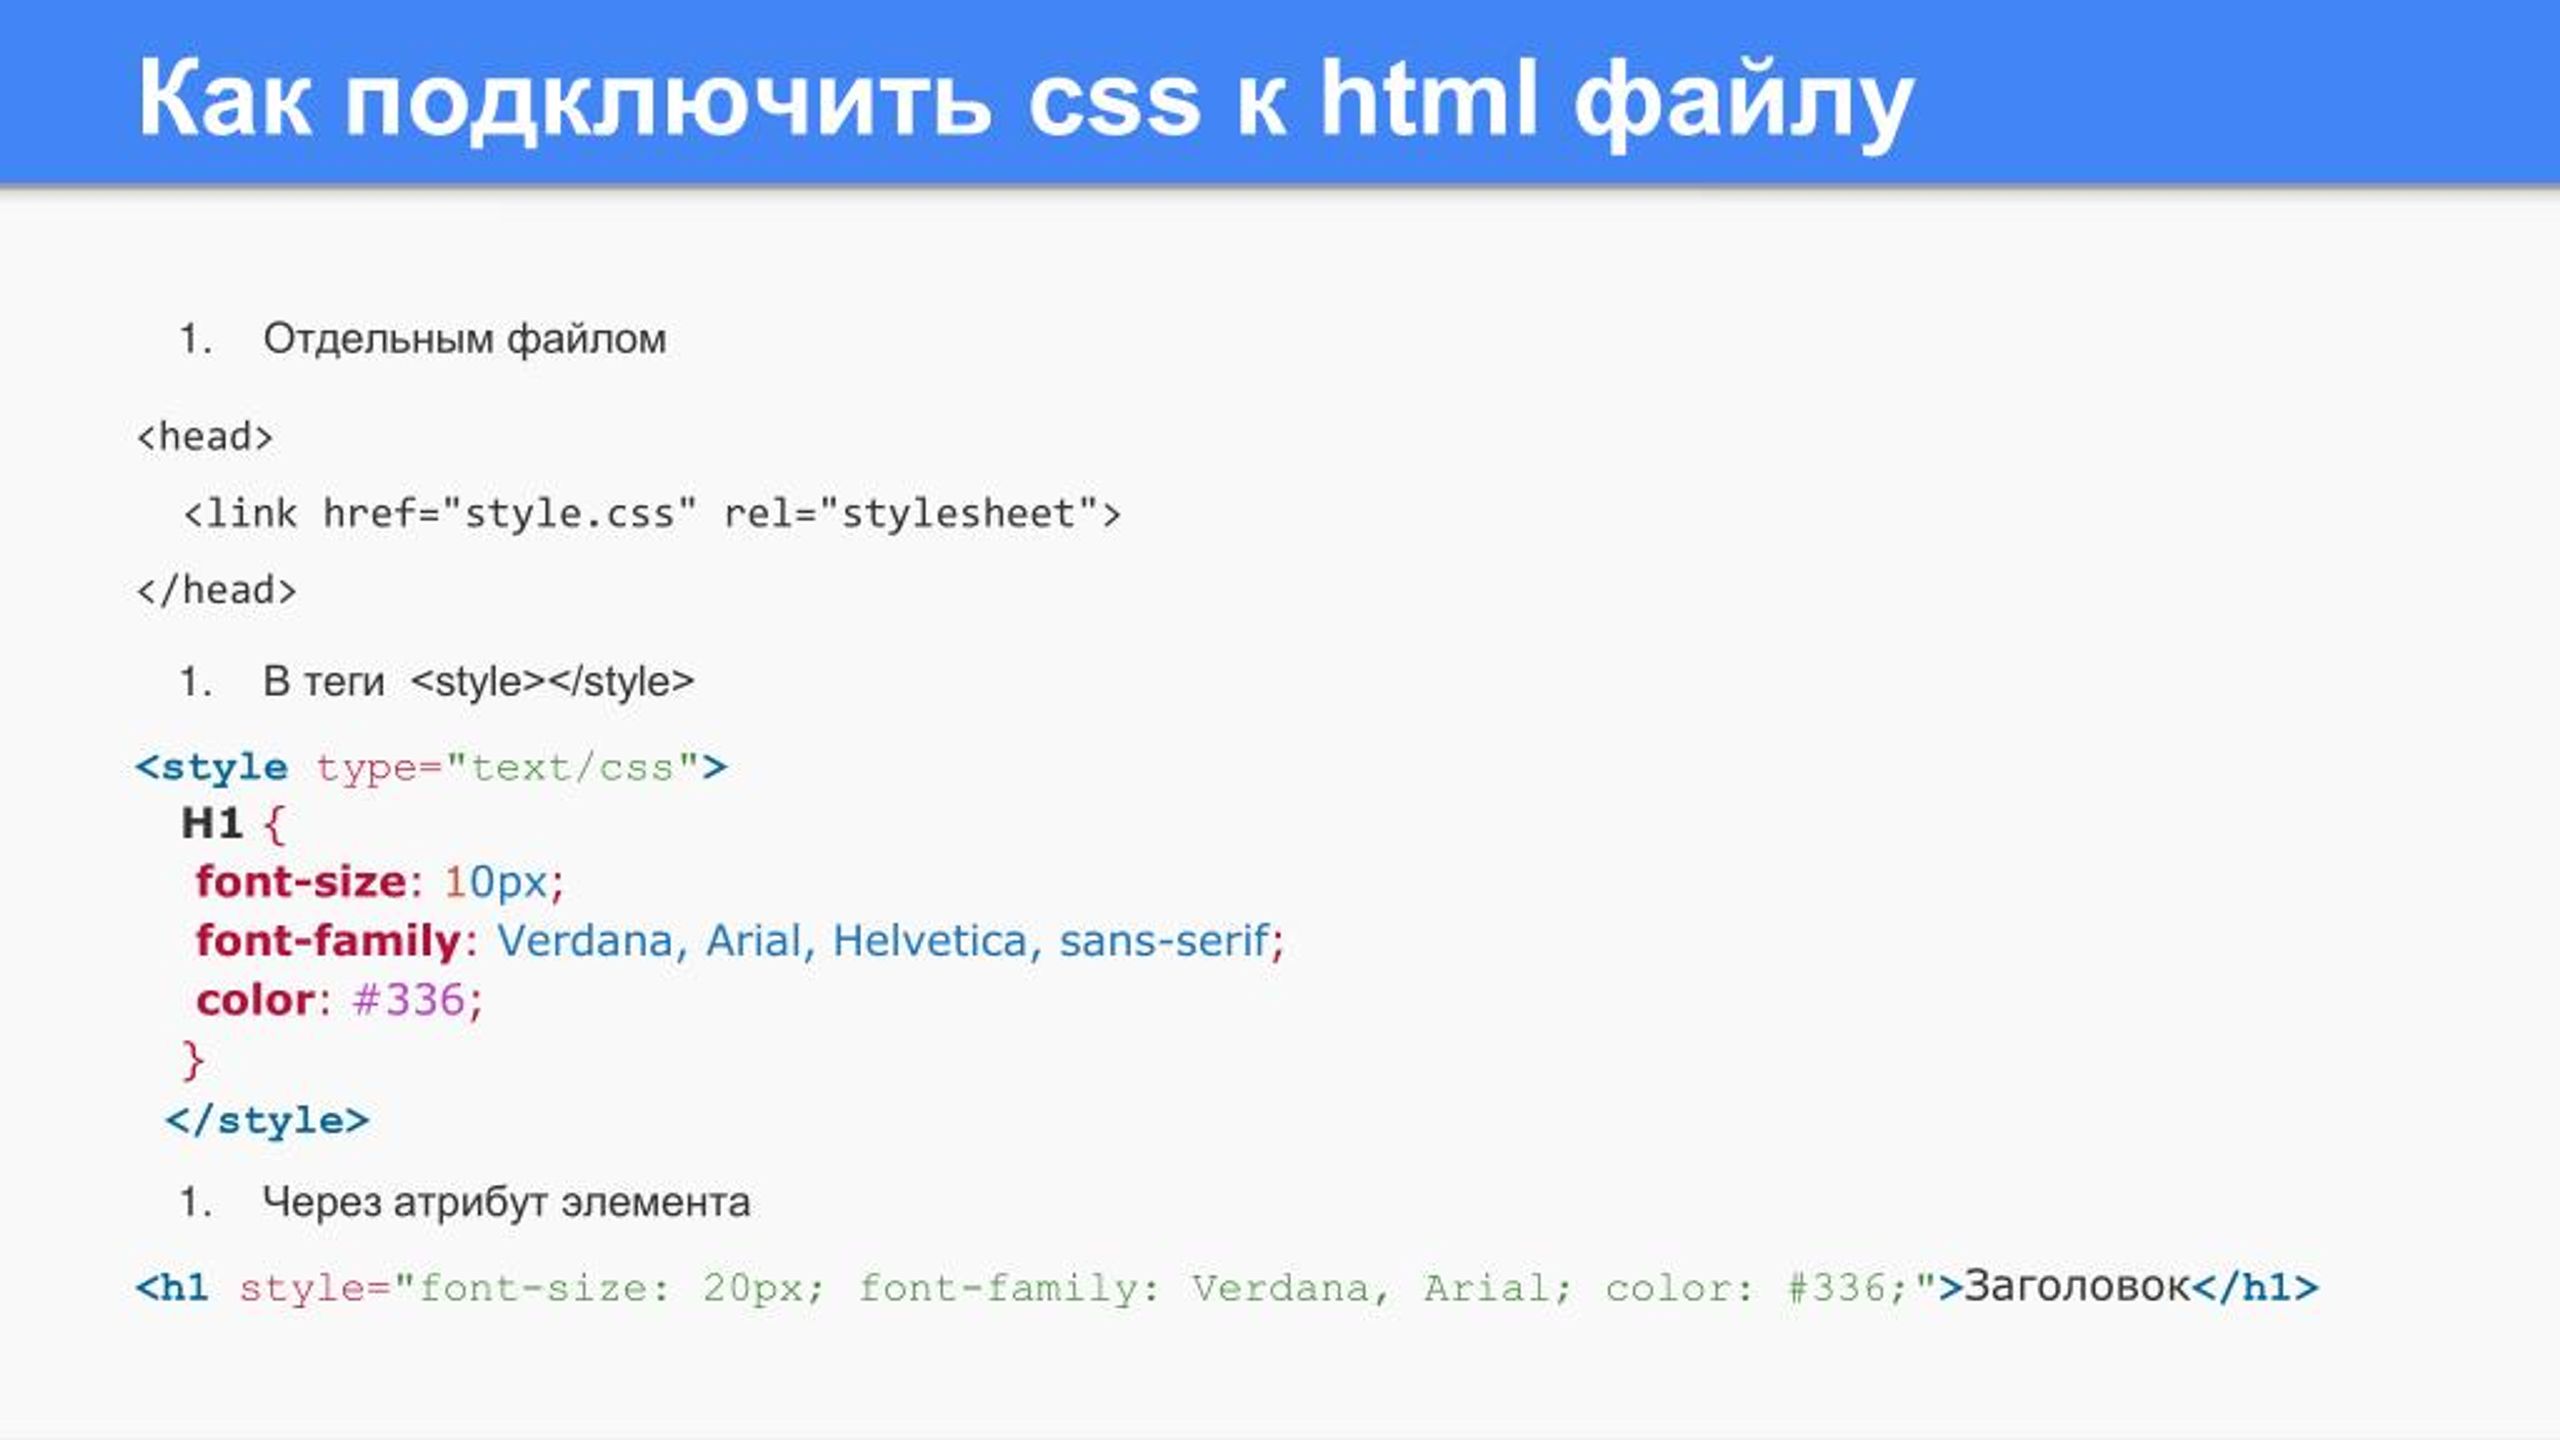 Как вставить файл в html. Как подключить CSS К html. Как подключить CSS файл к html. Html & CSS. Подключить стиль в html.